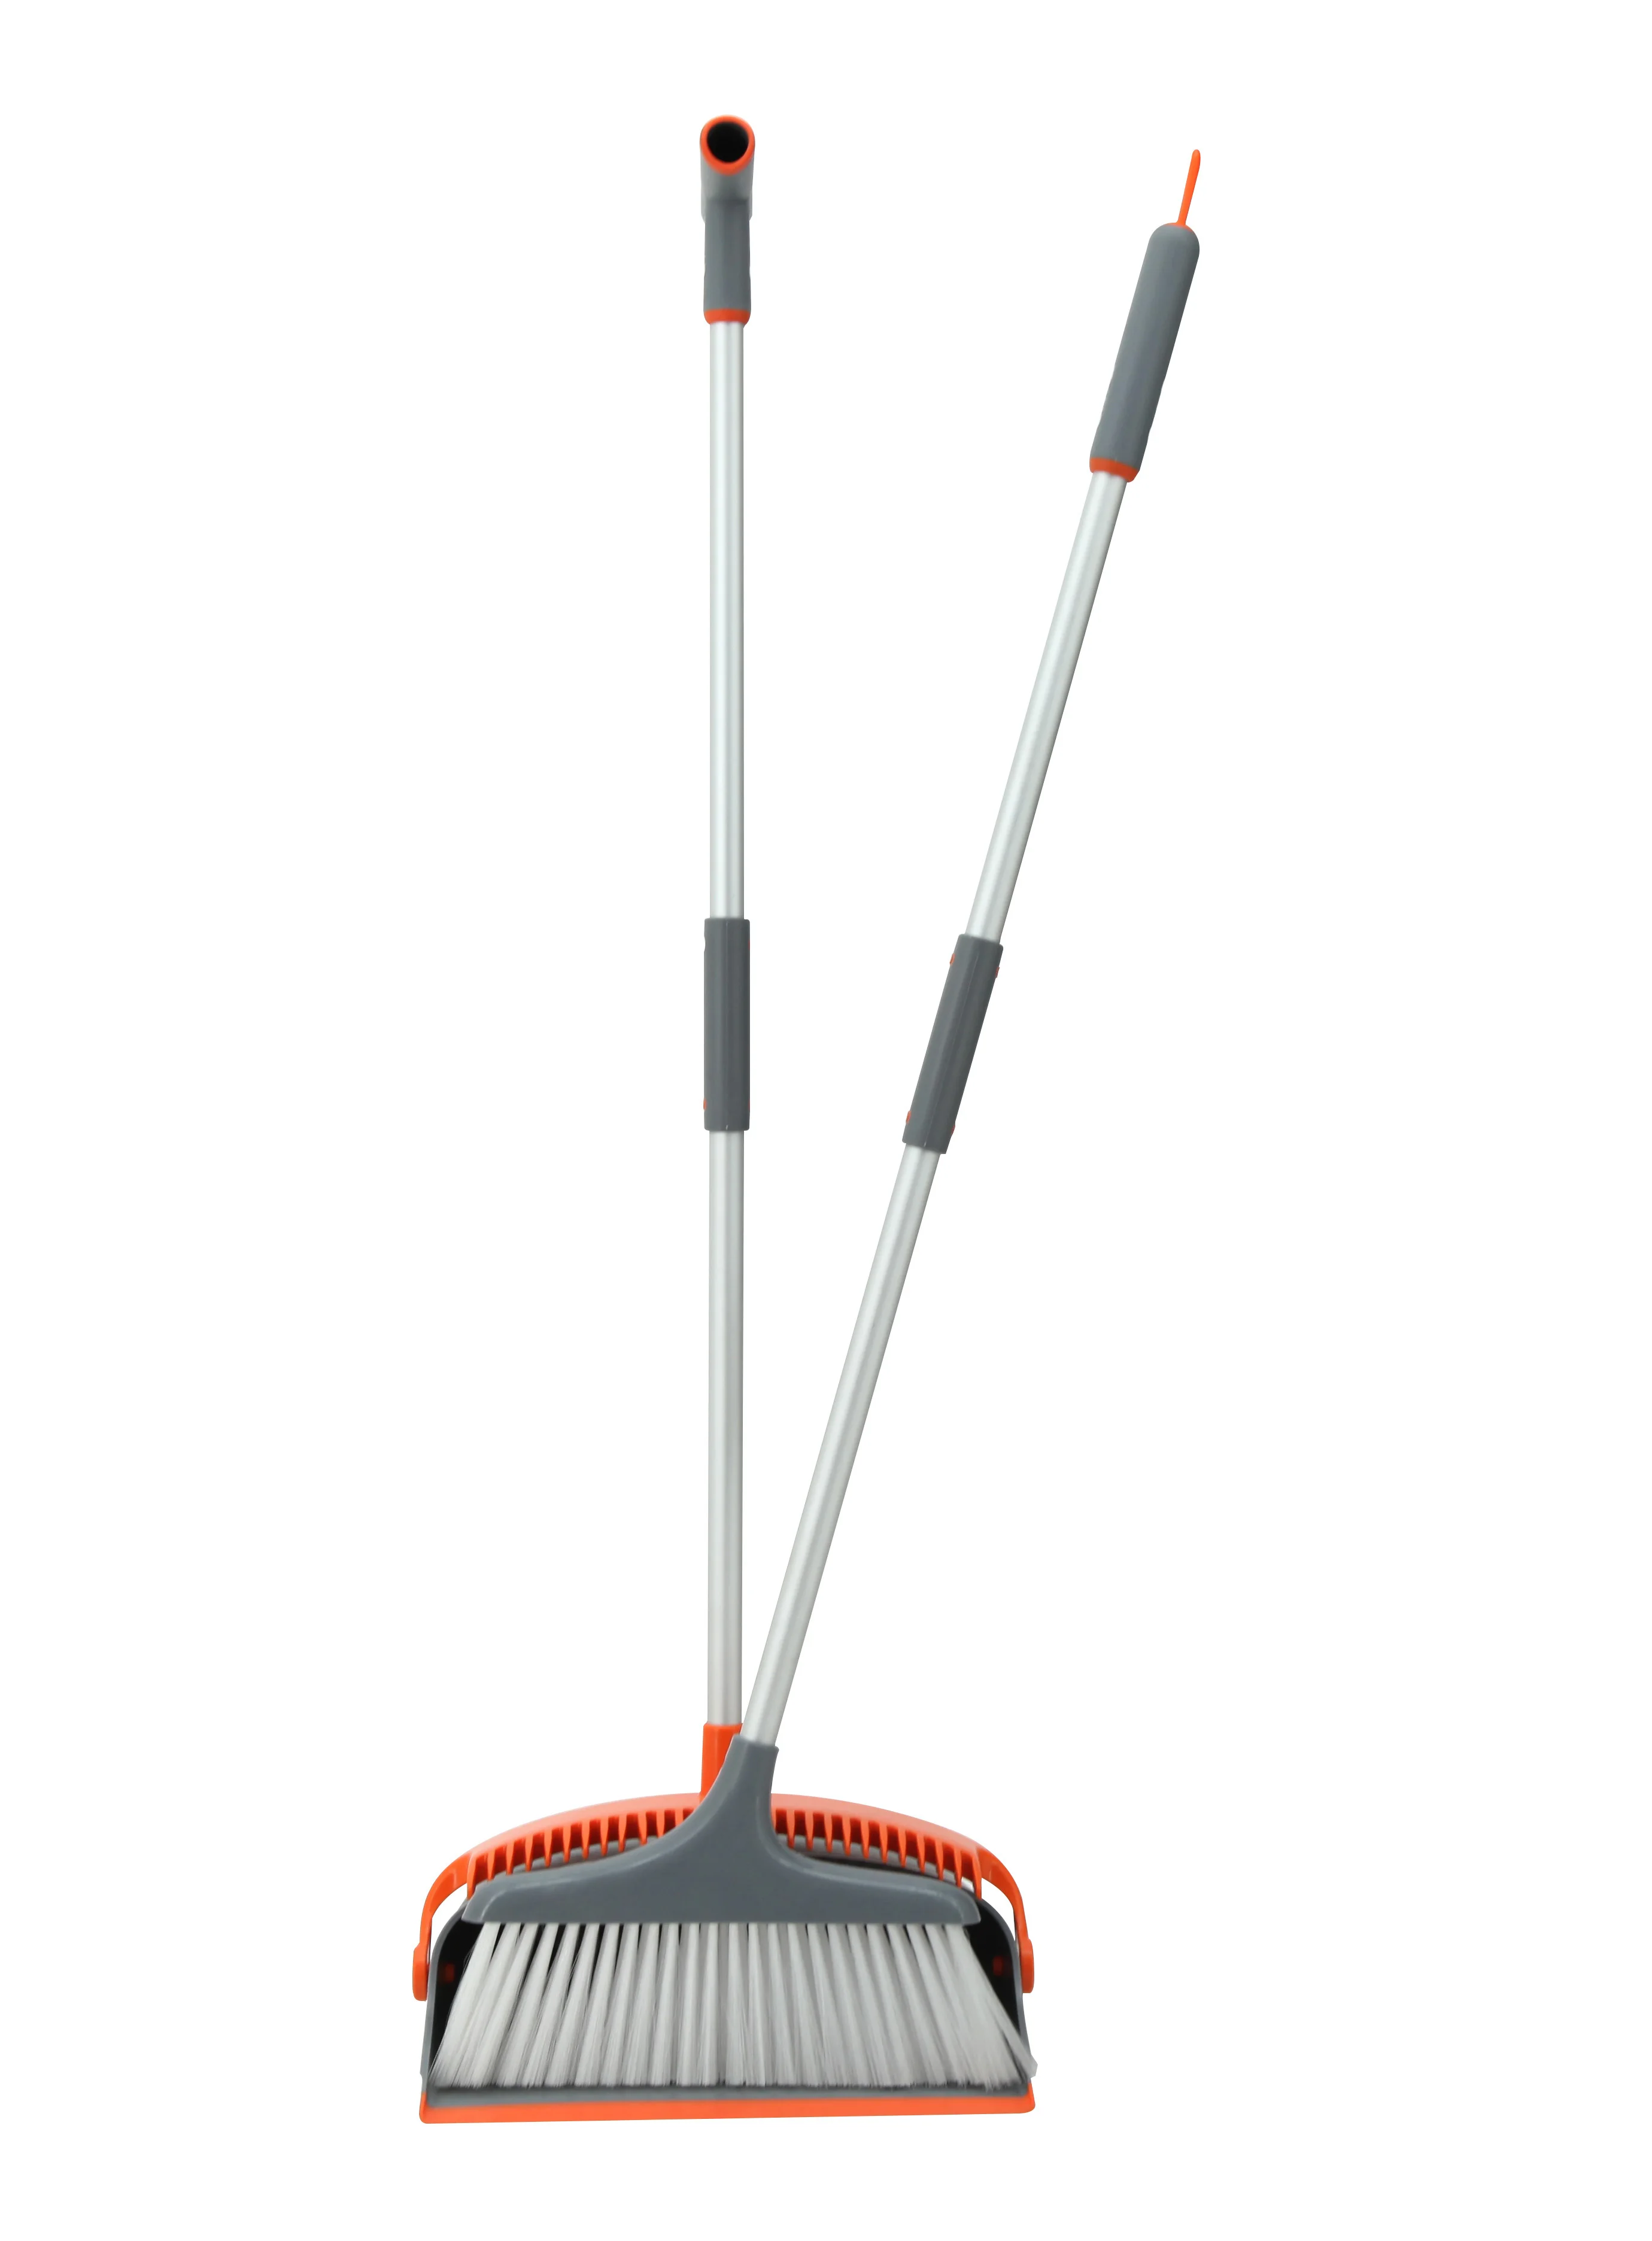 
aluminum handle pole orange broom and dustpan set 